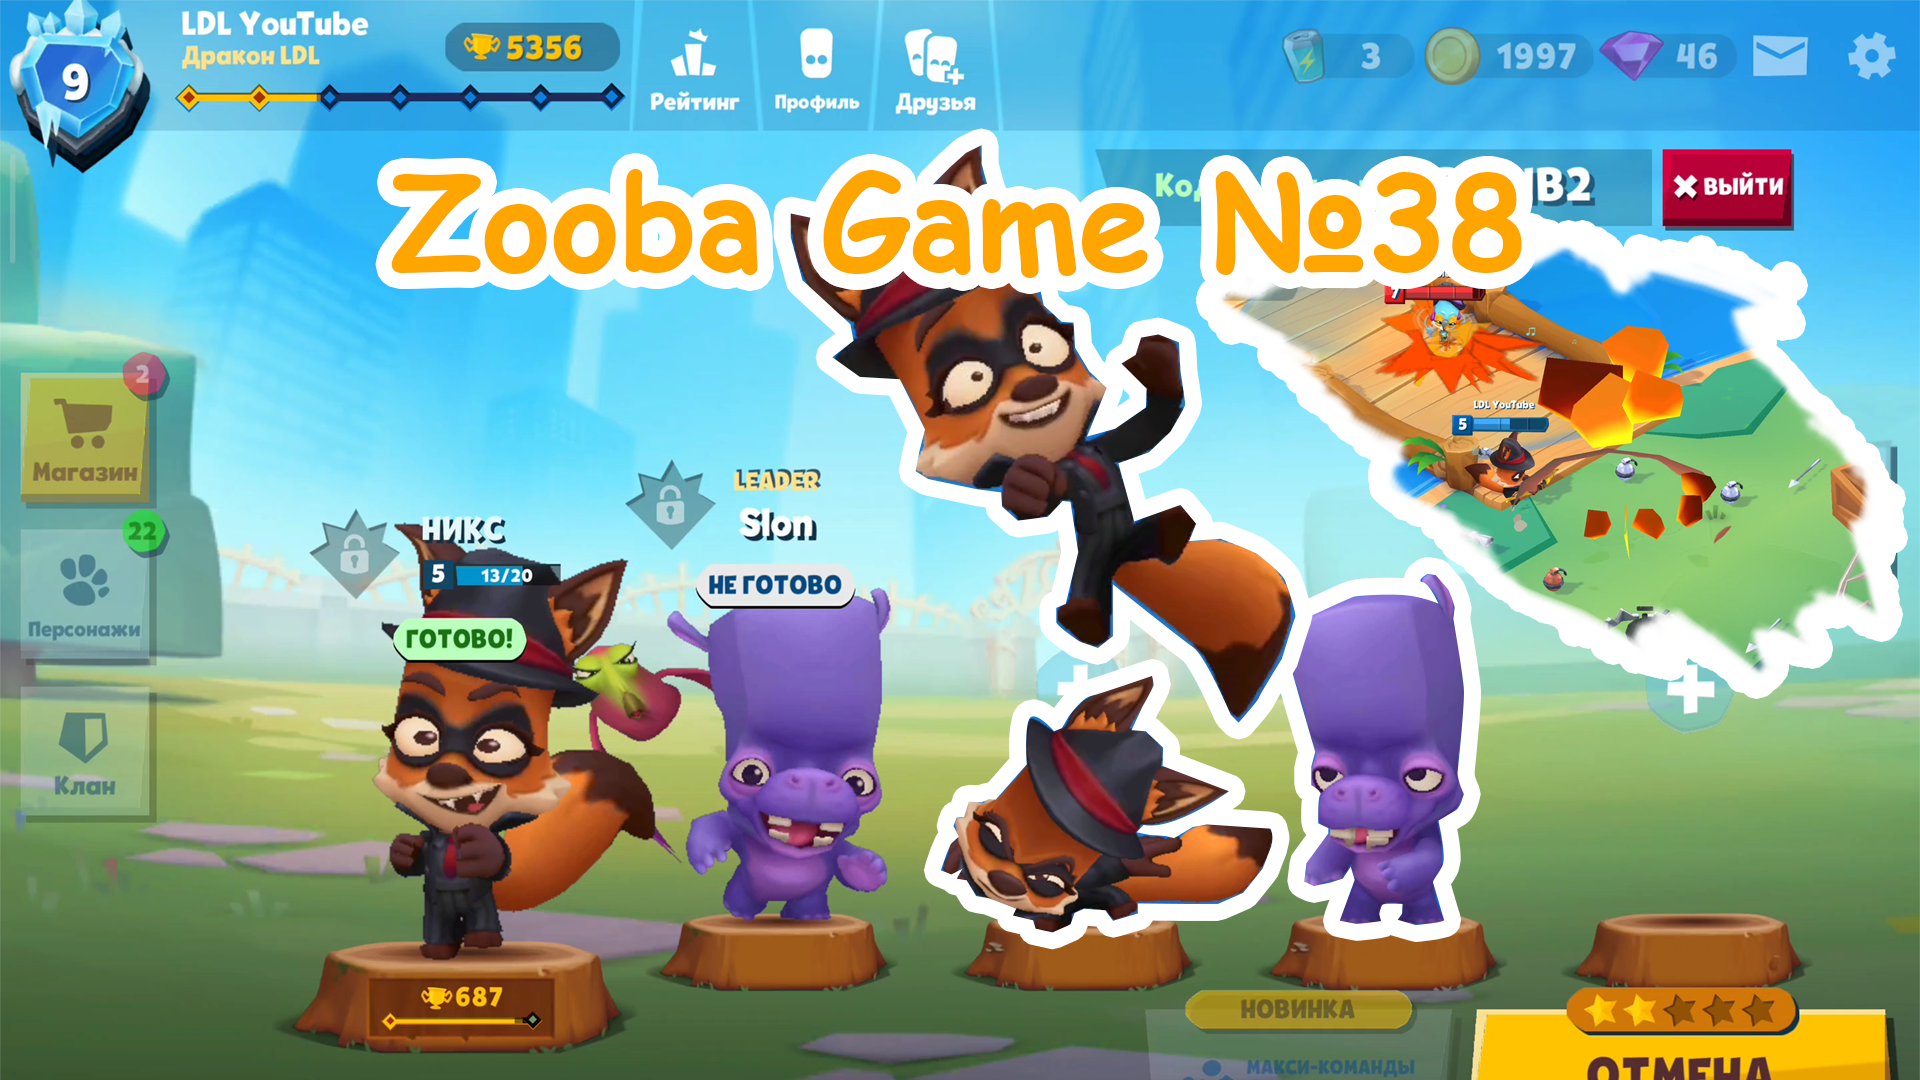 Zooba Game #38 #zooba